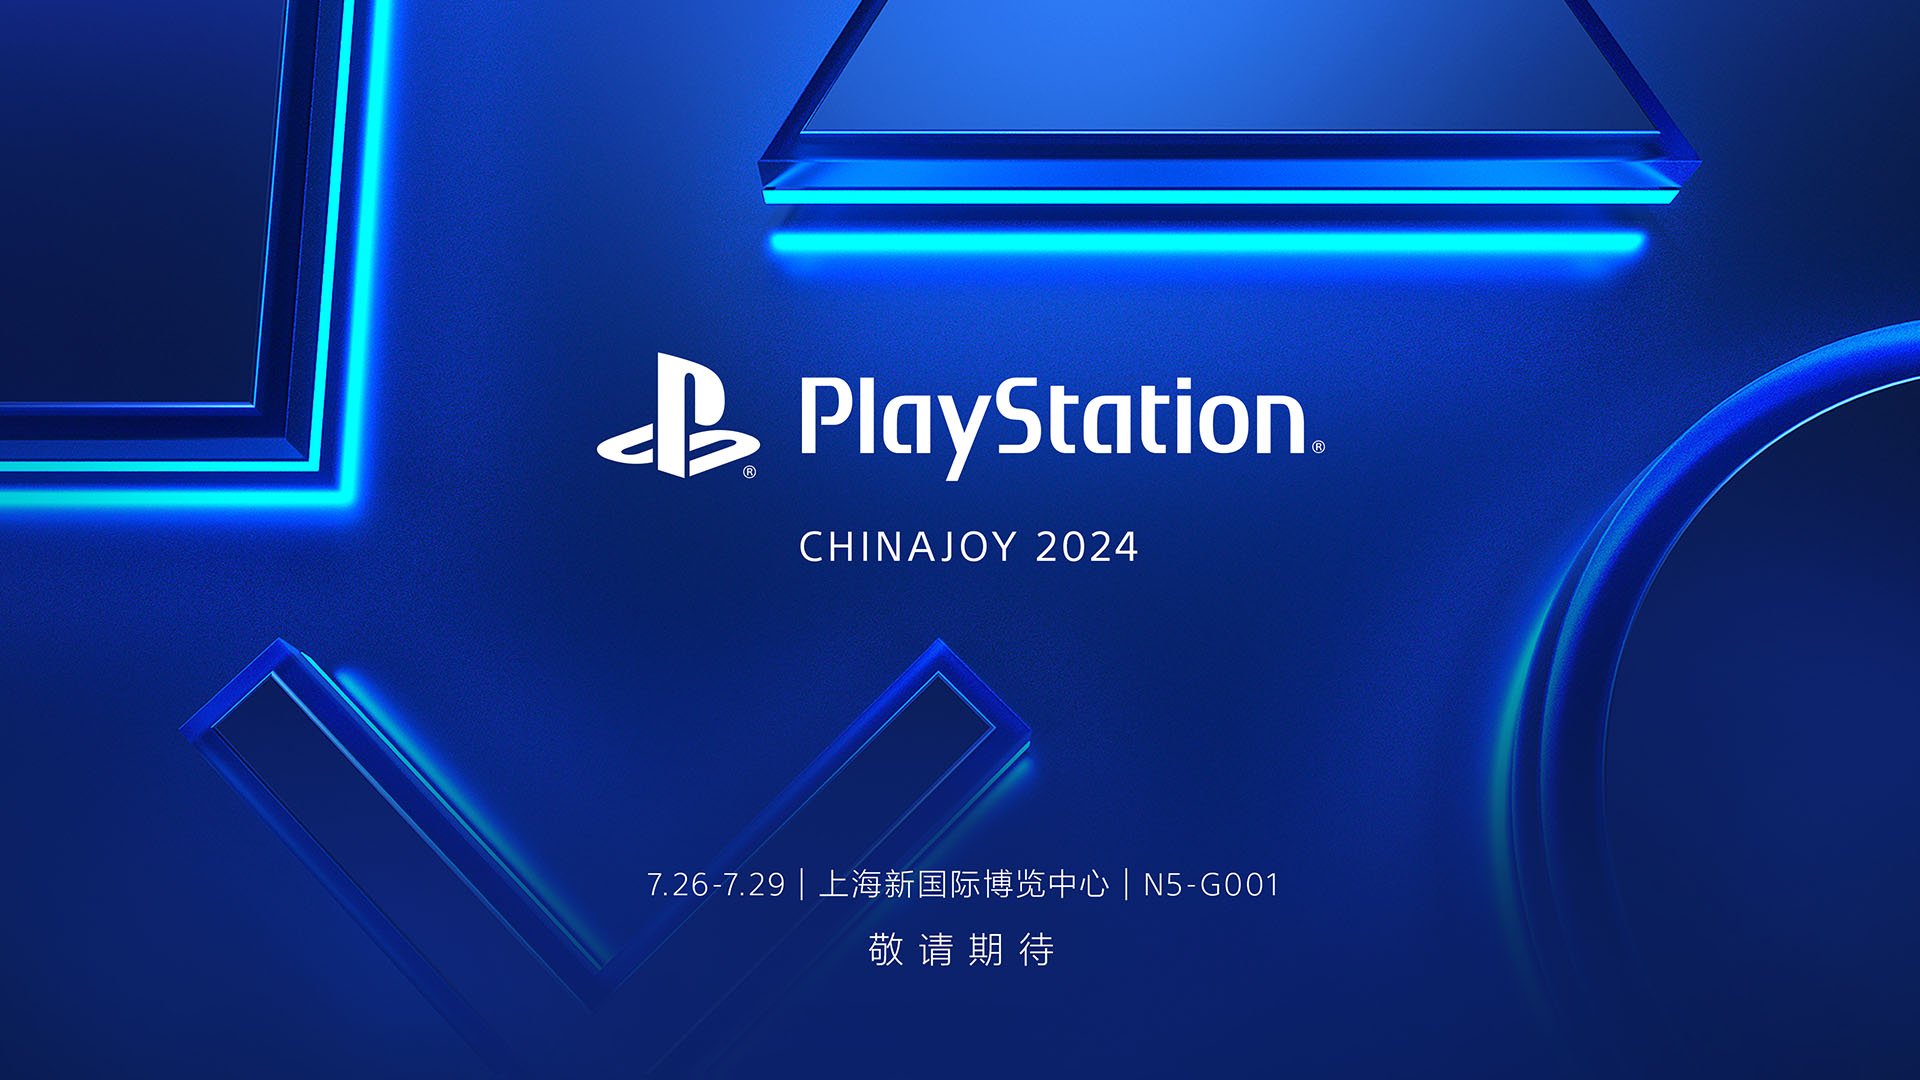 پلی استیشن در ChinaJoy 2024 حضور خواهد داشت